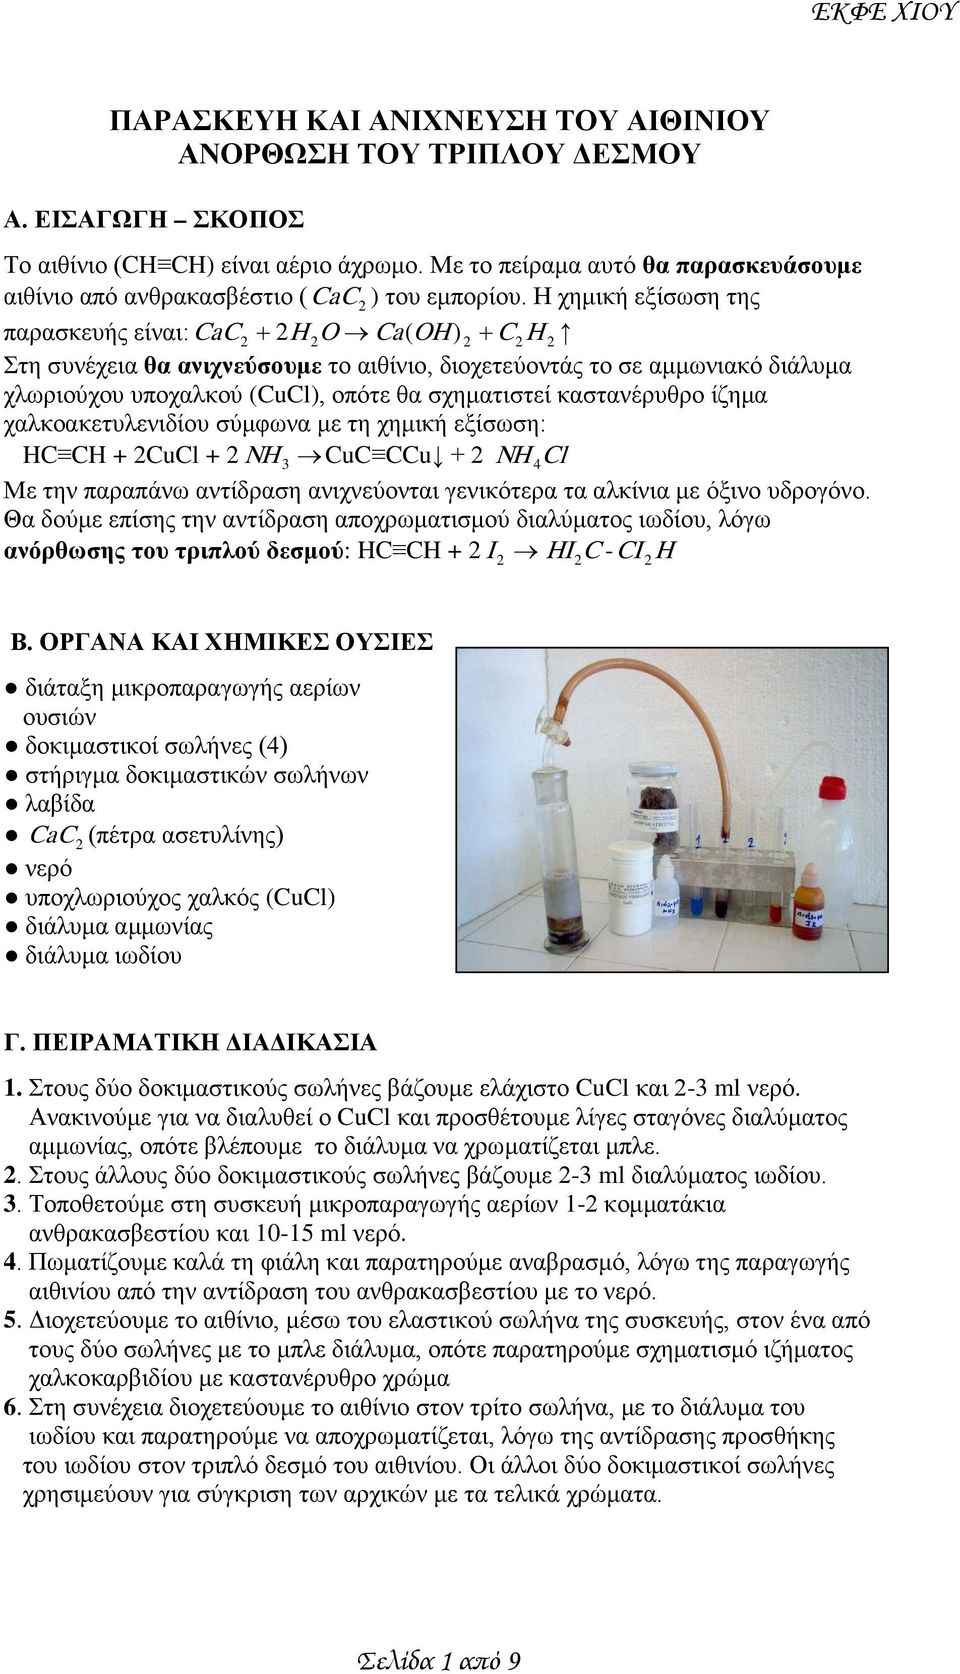 καστανέρυθρο ίζημα χαλκοακετυλενιδίου σύμφωνα με τη χημική εξίσωση: HC + CuCl + NH CuC CCu + NH Cl Με την παραπάνω αντίδραση ανιχνεύονται γενικότερα τα αλκίνια με όξινο υδρογόνο.